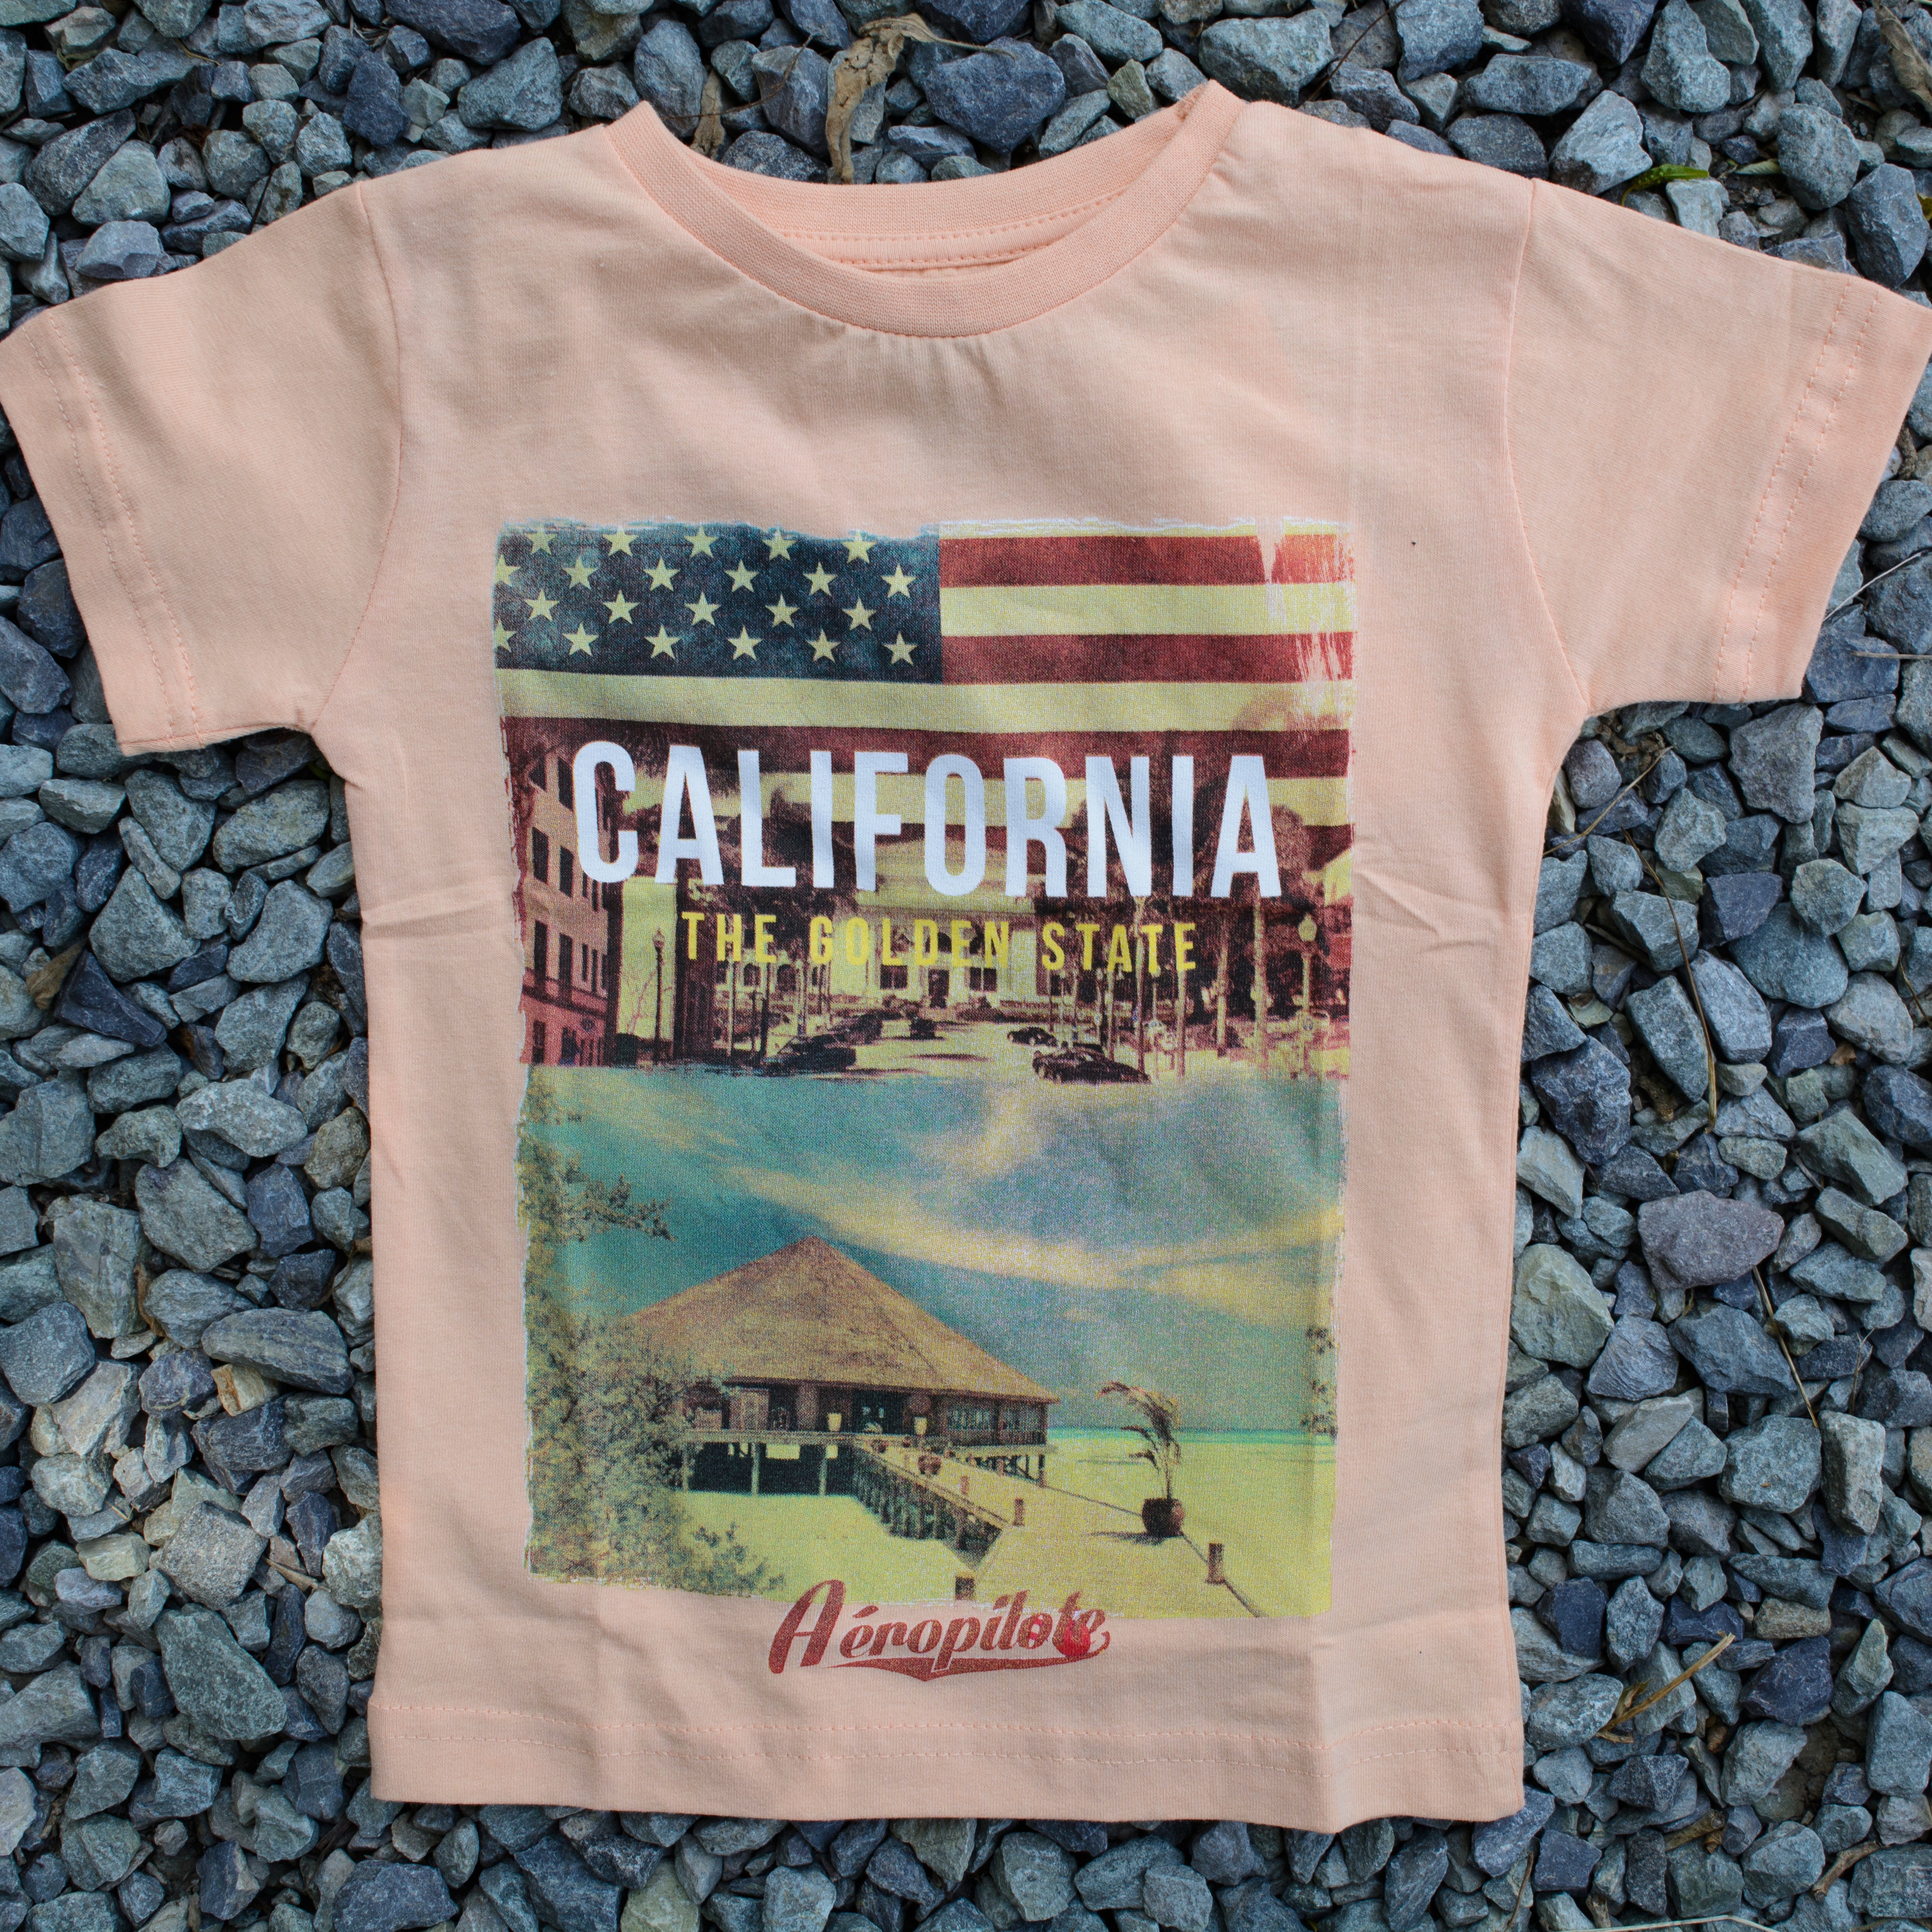 California - Tees for Kids - Red & White T-Shirt - Gift for Children - Wear Sierra